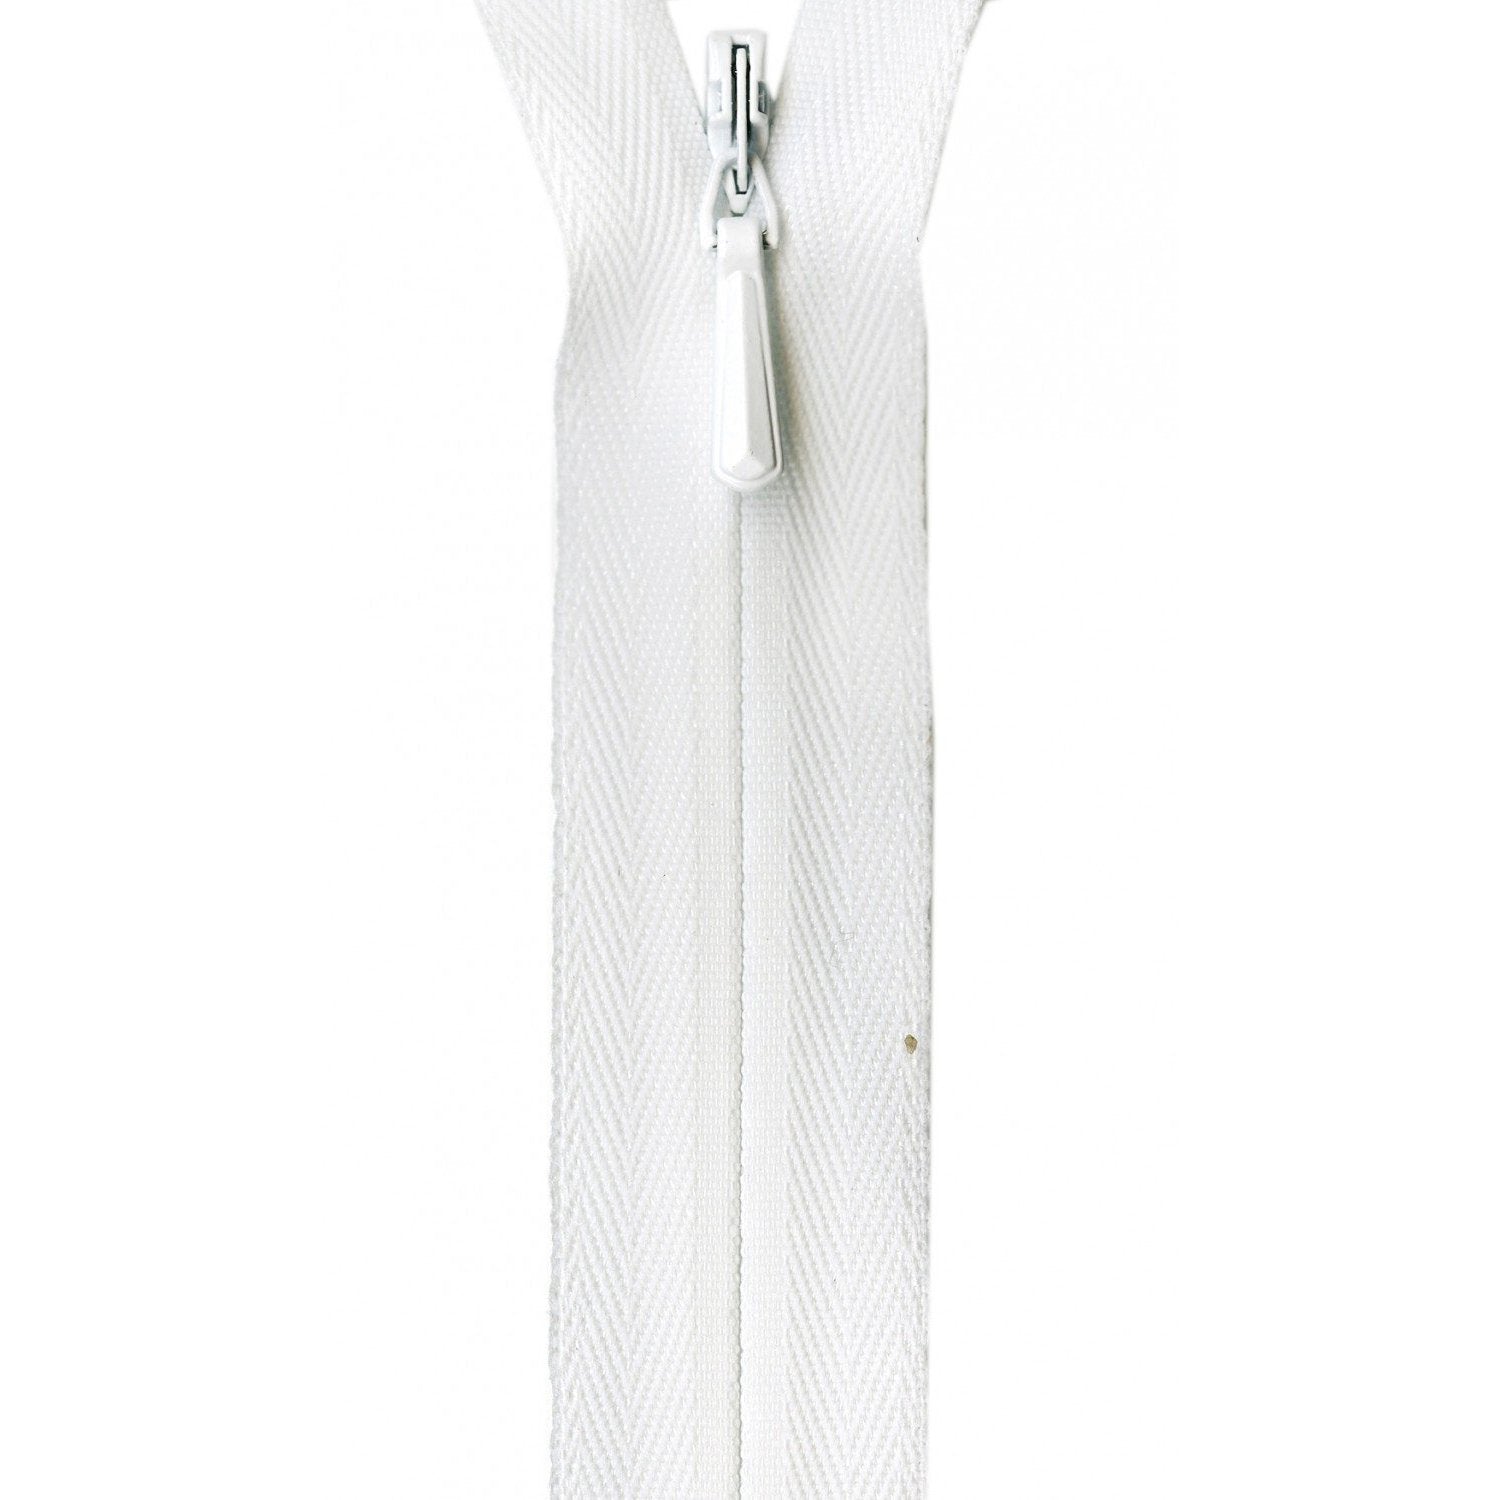 Zipper Tape Invisible 8-inch White